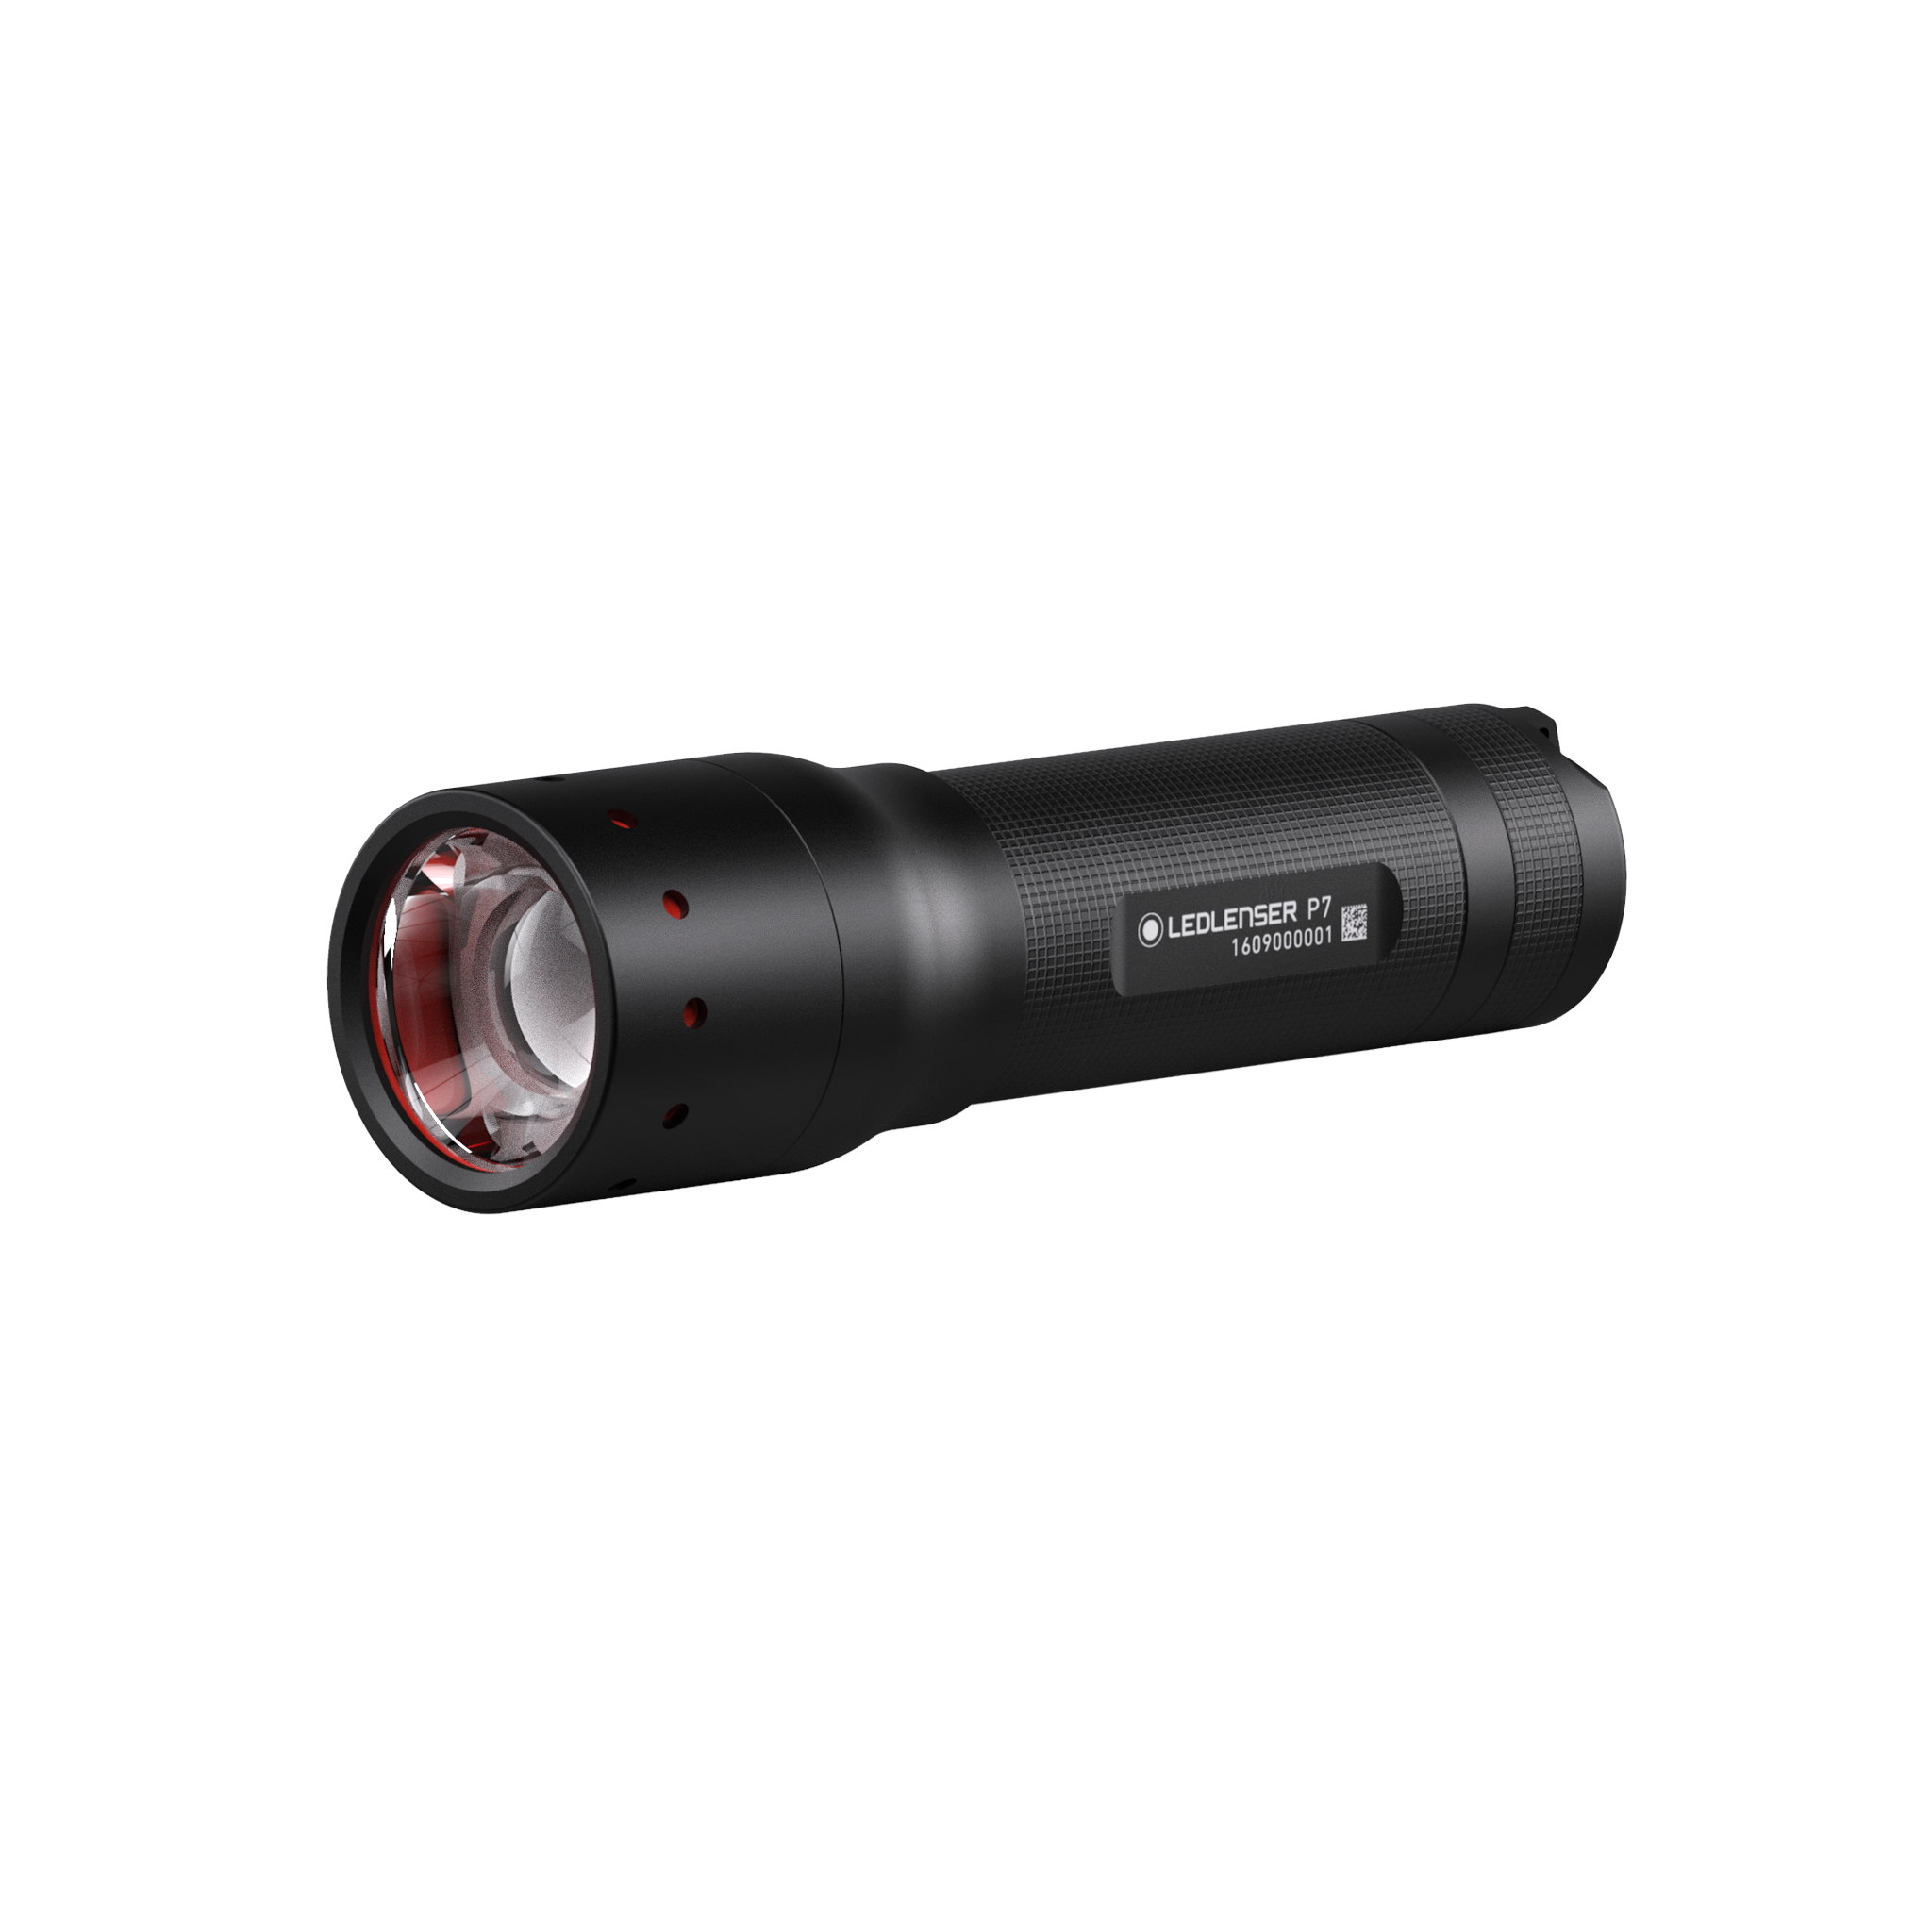 Led Lenser P7 | Shop P7 Flashlight USA